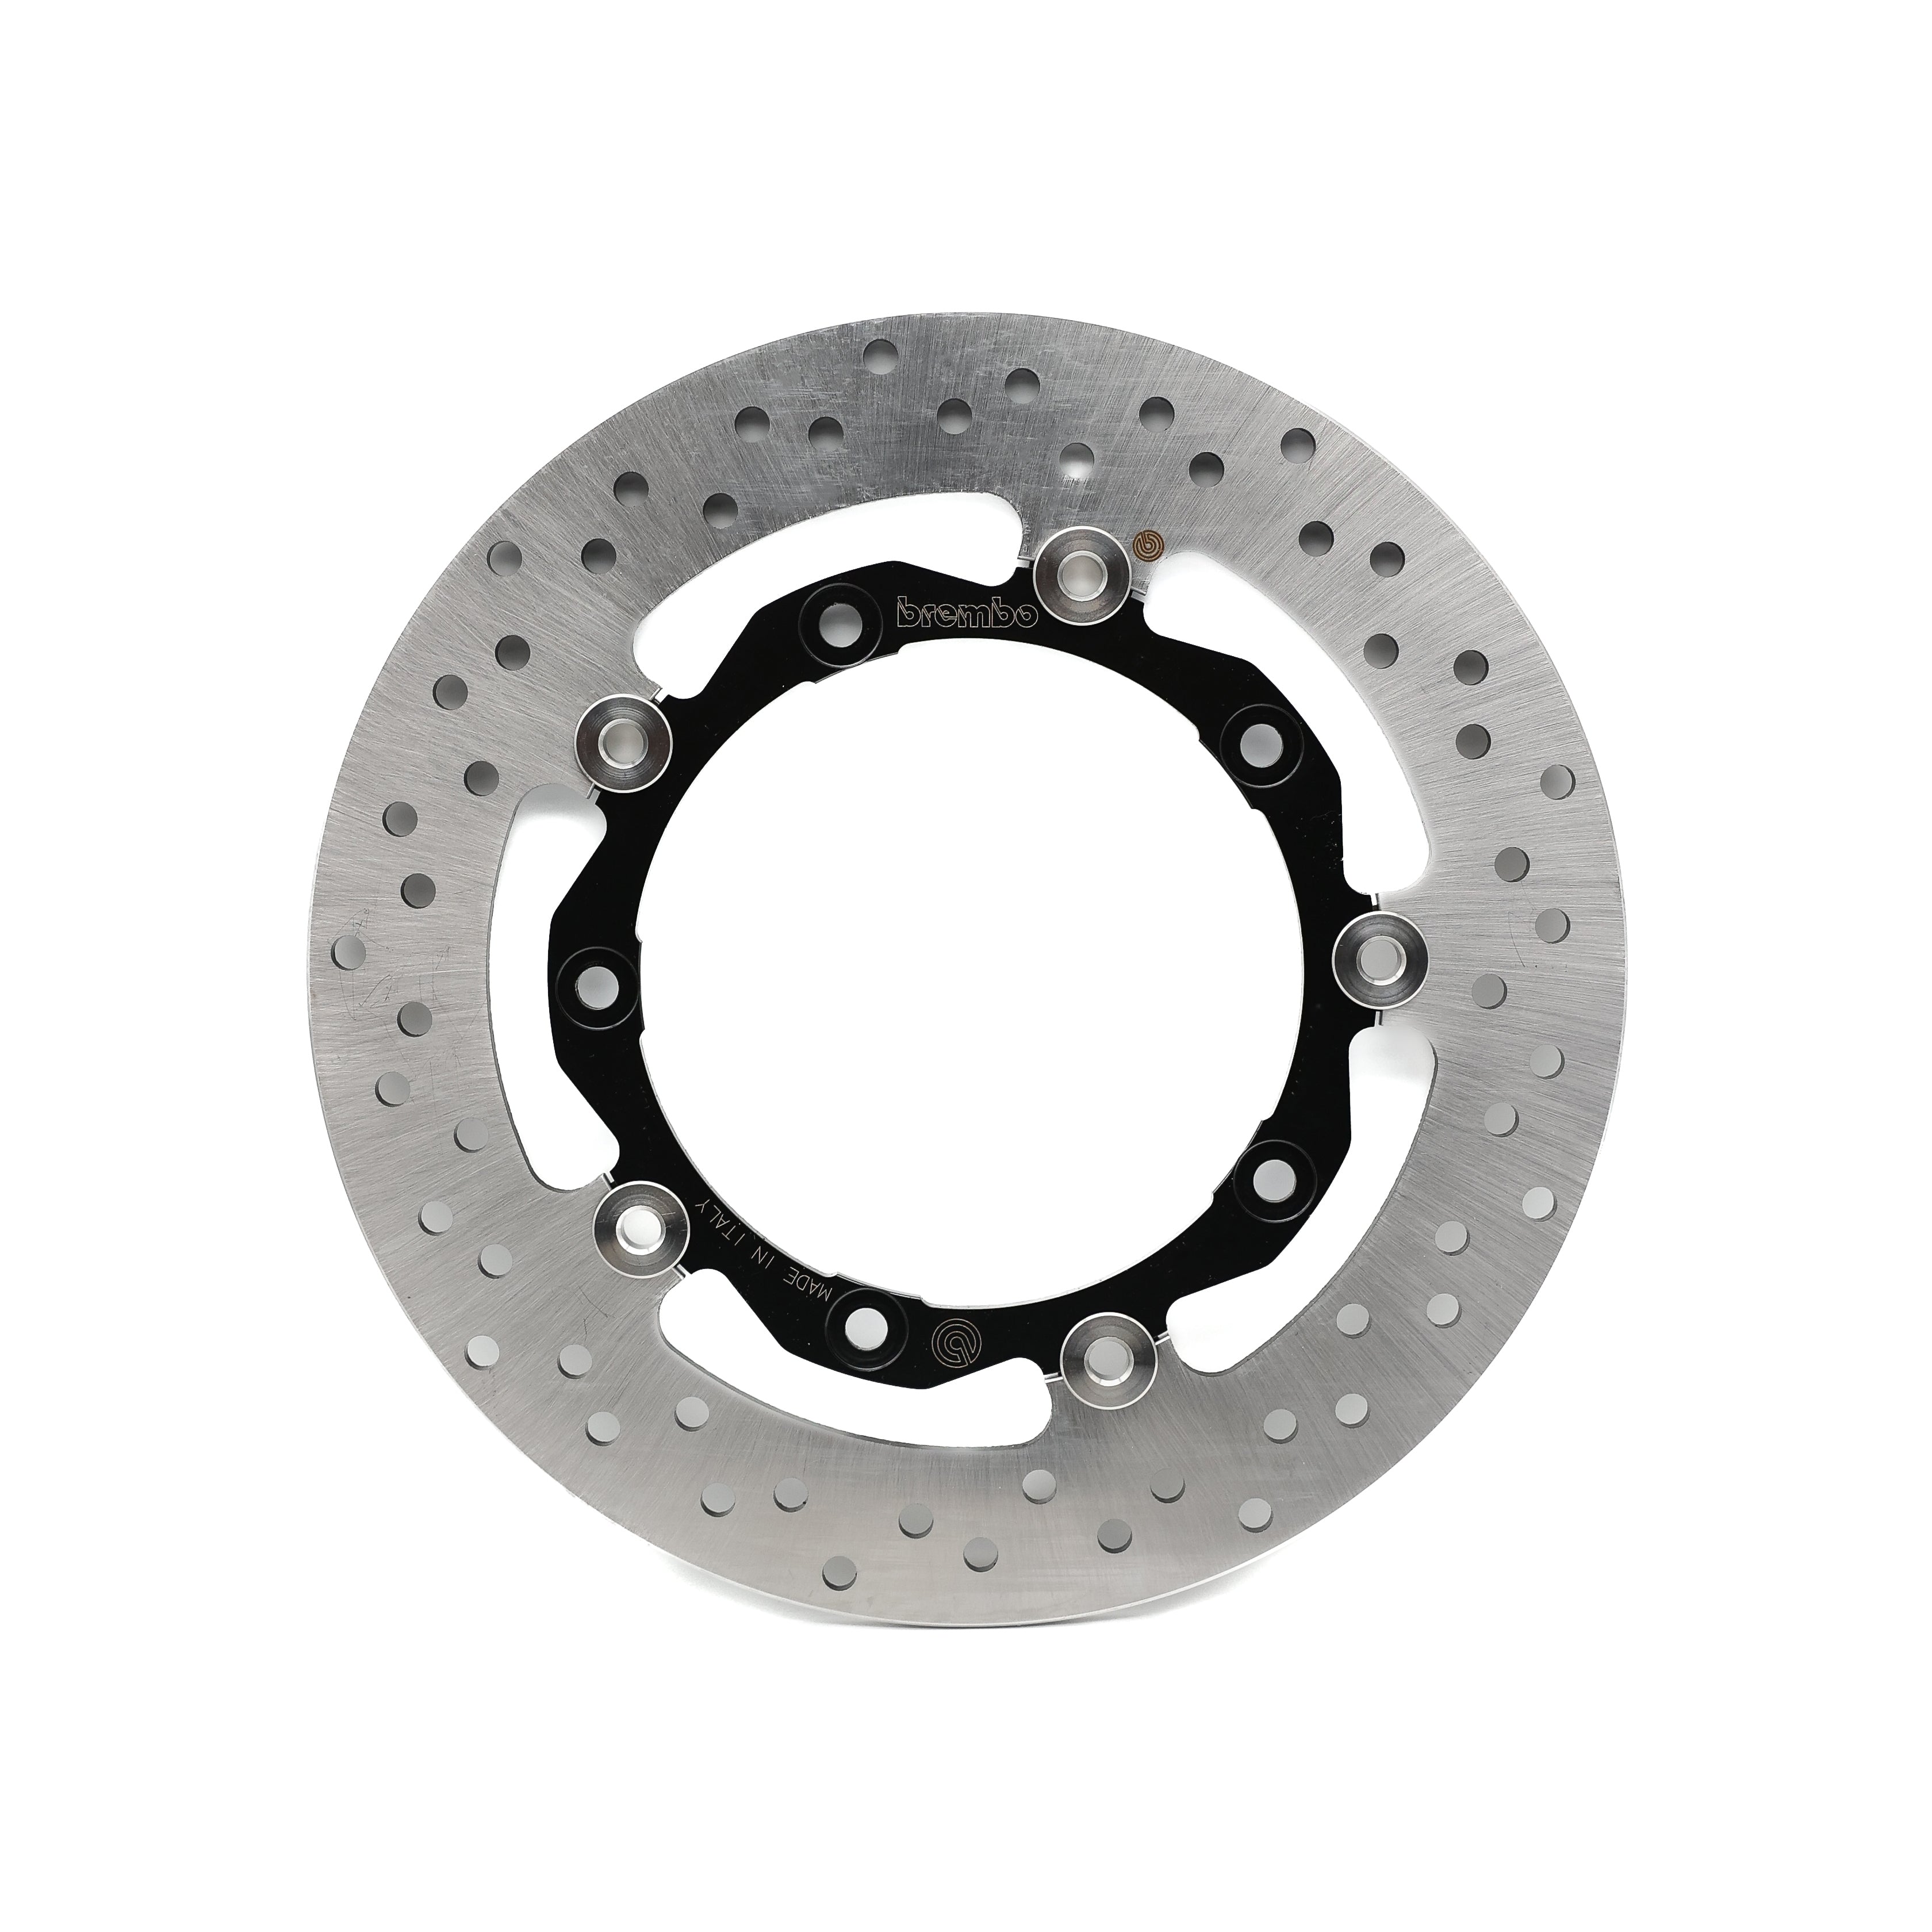 Brembo TMAX front brake disc